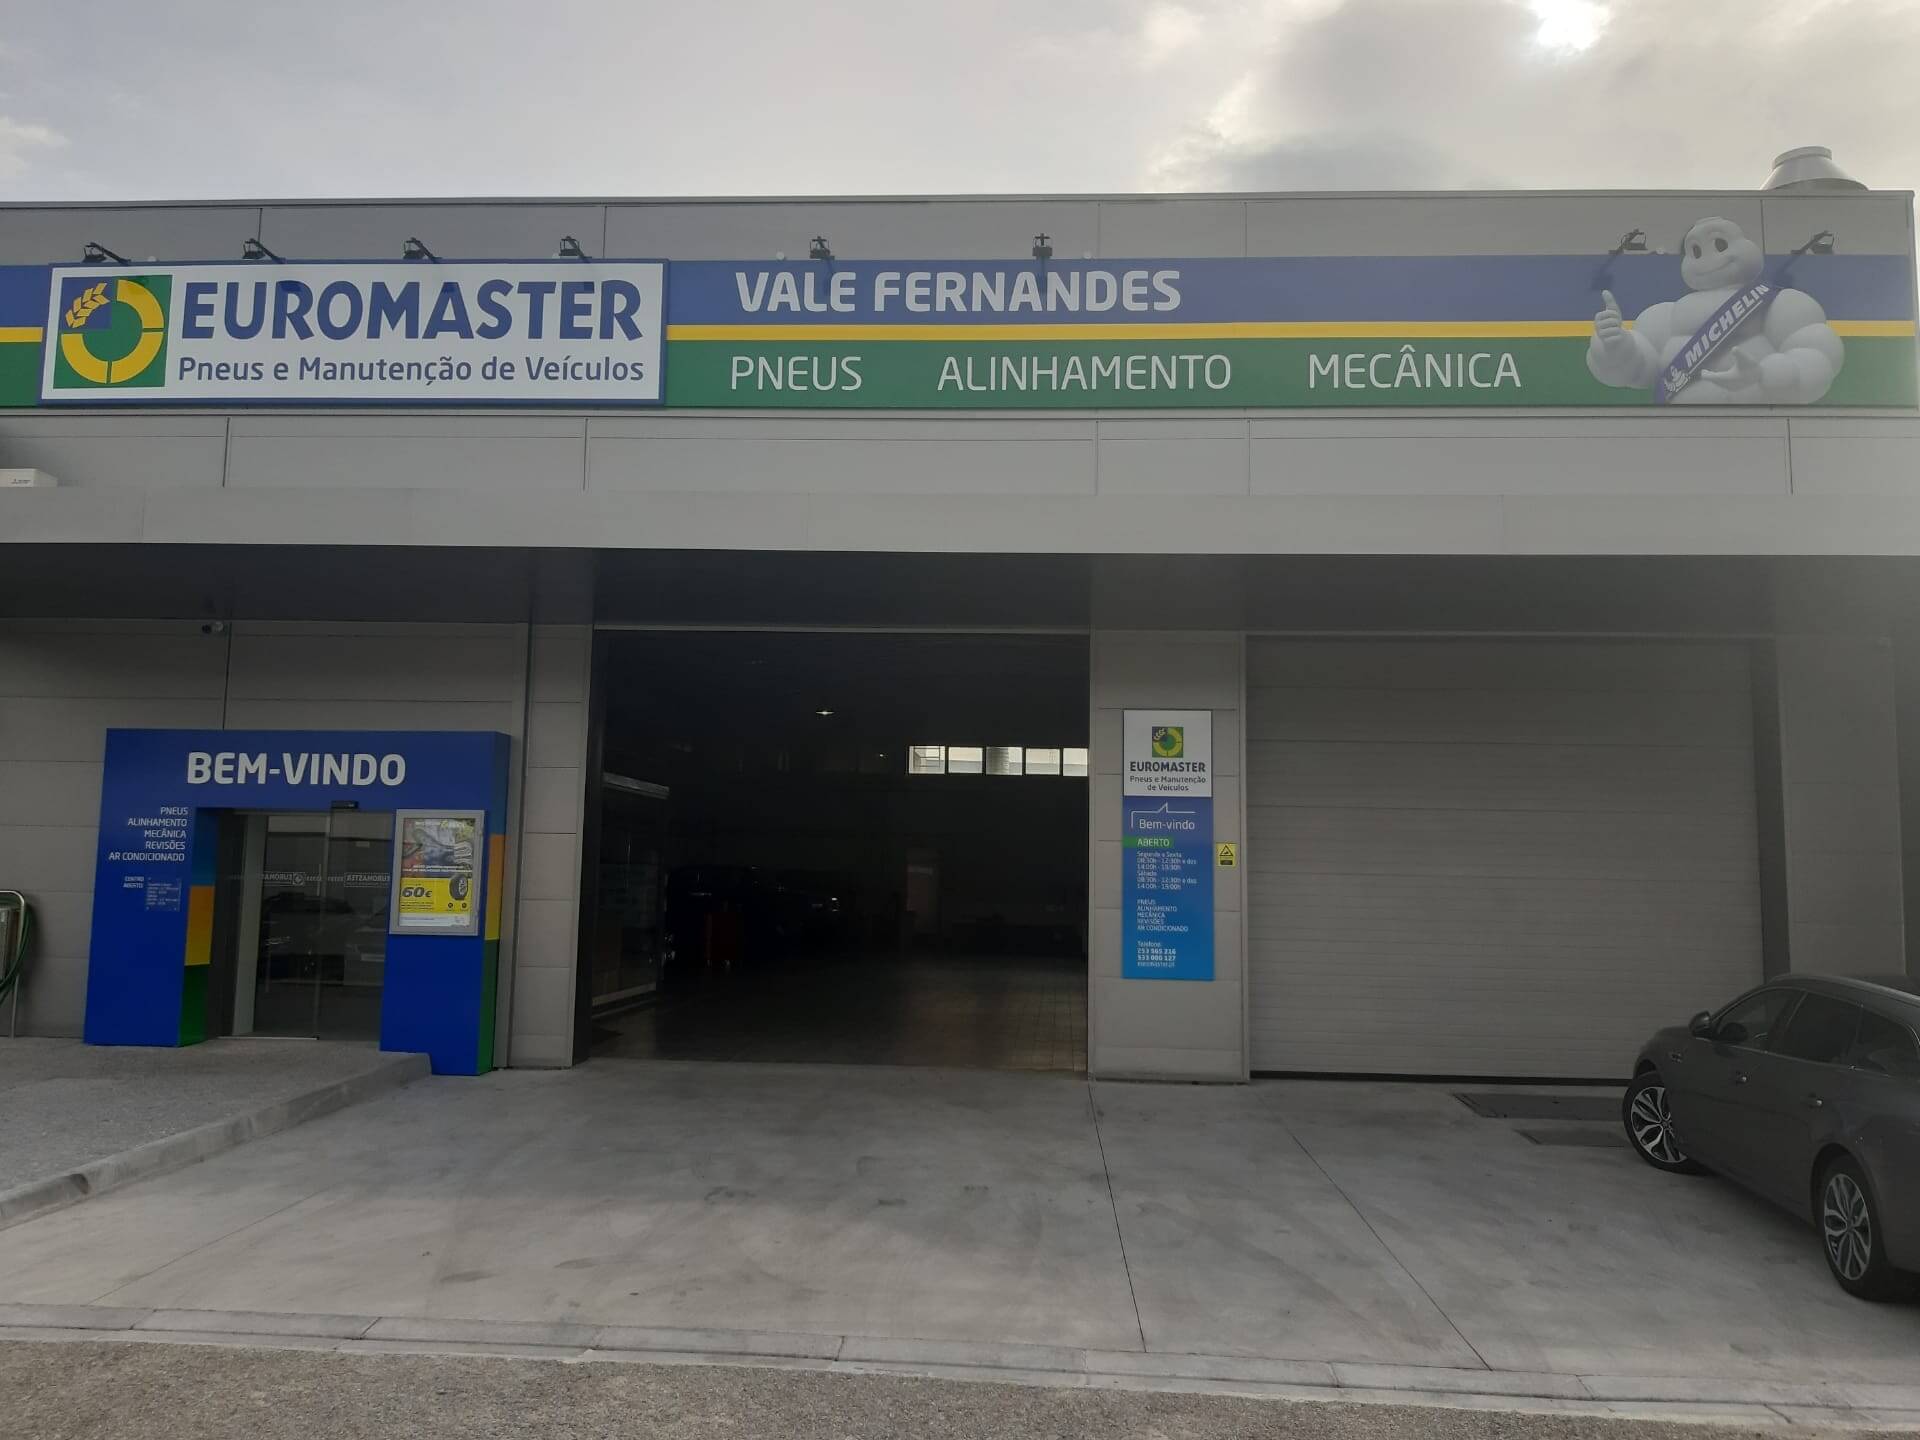 Euromaster Vale Fernandes